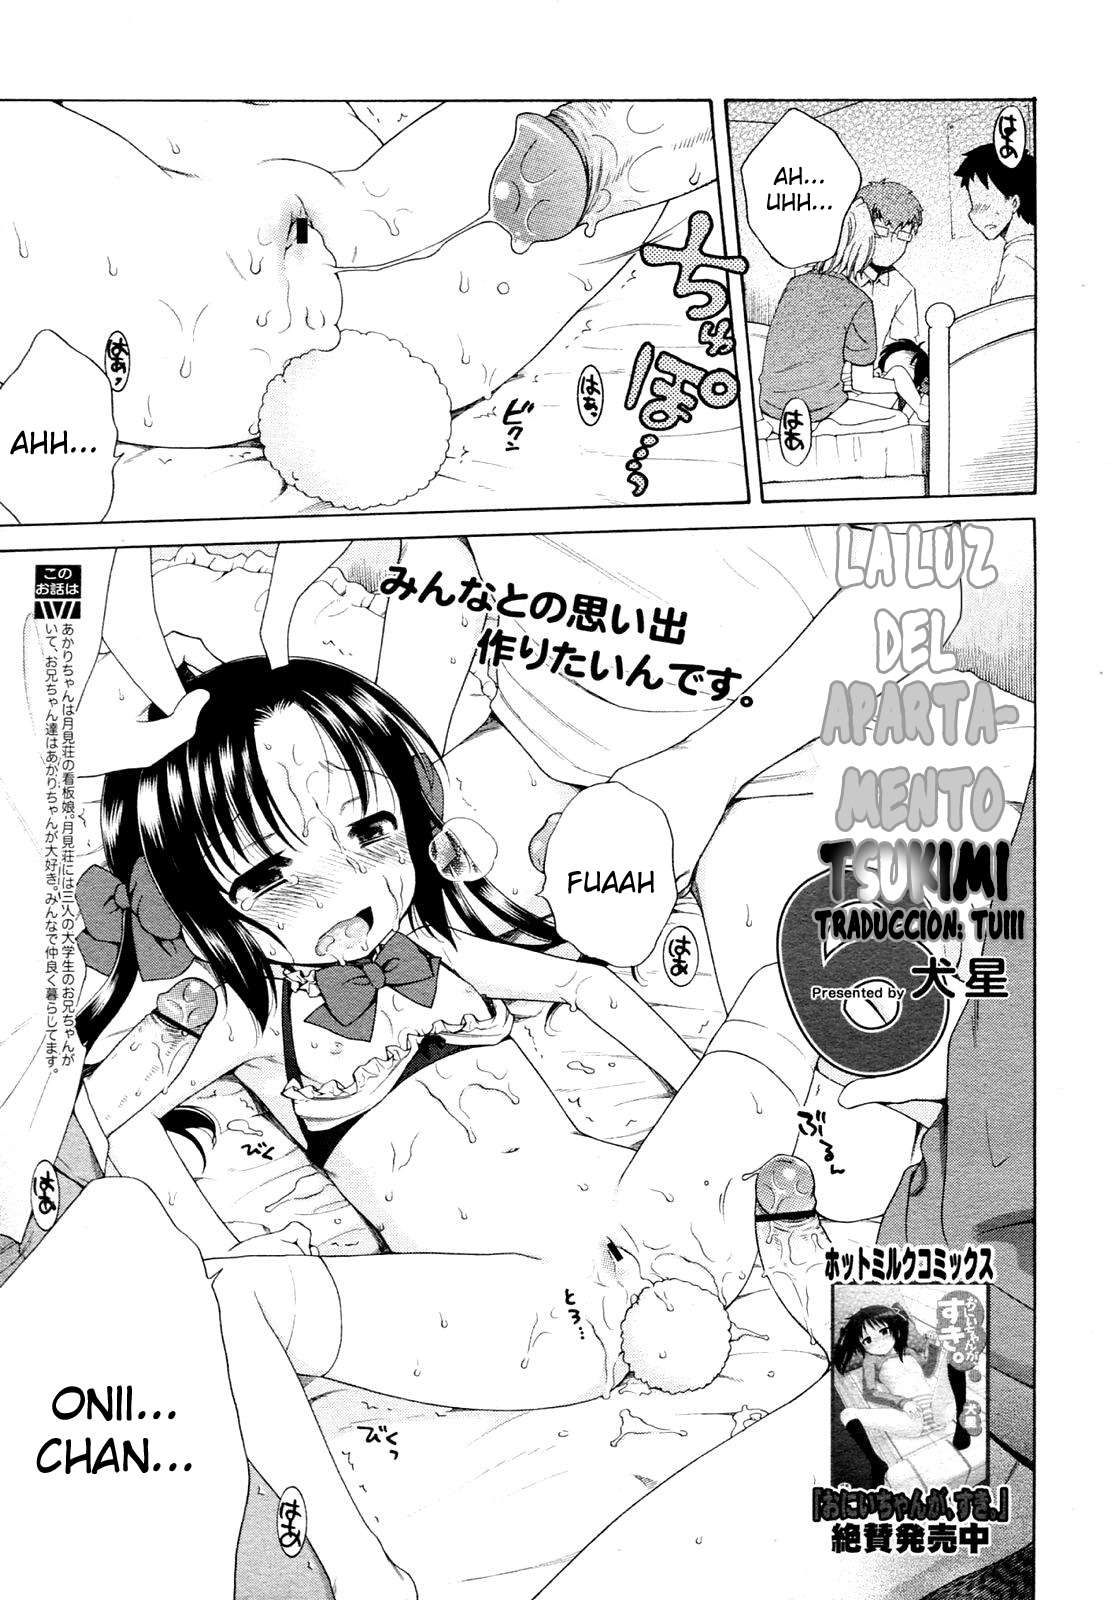 Tsukimisou No Akari (La Luz Del Apartamento Tsukimi) Chapter-6 - 0